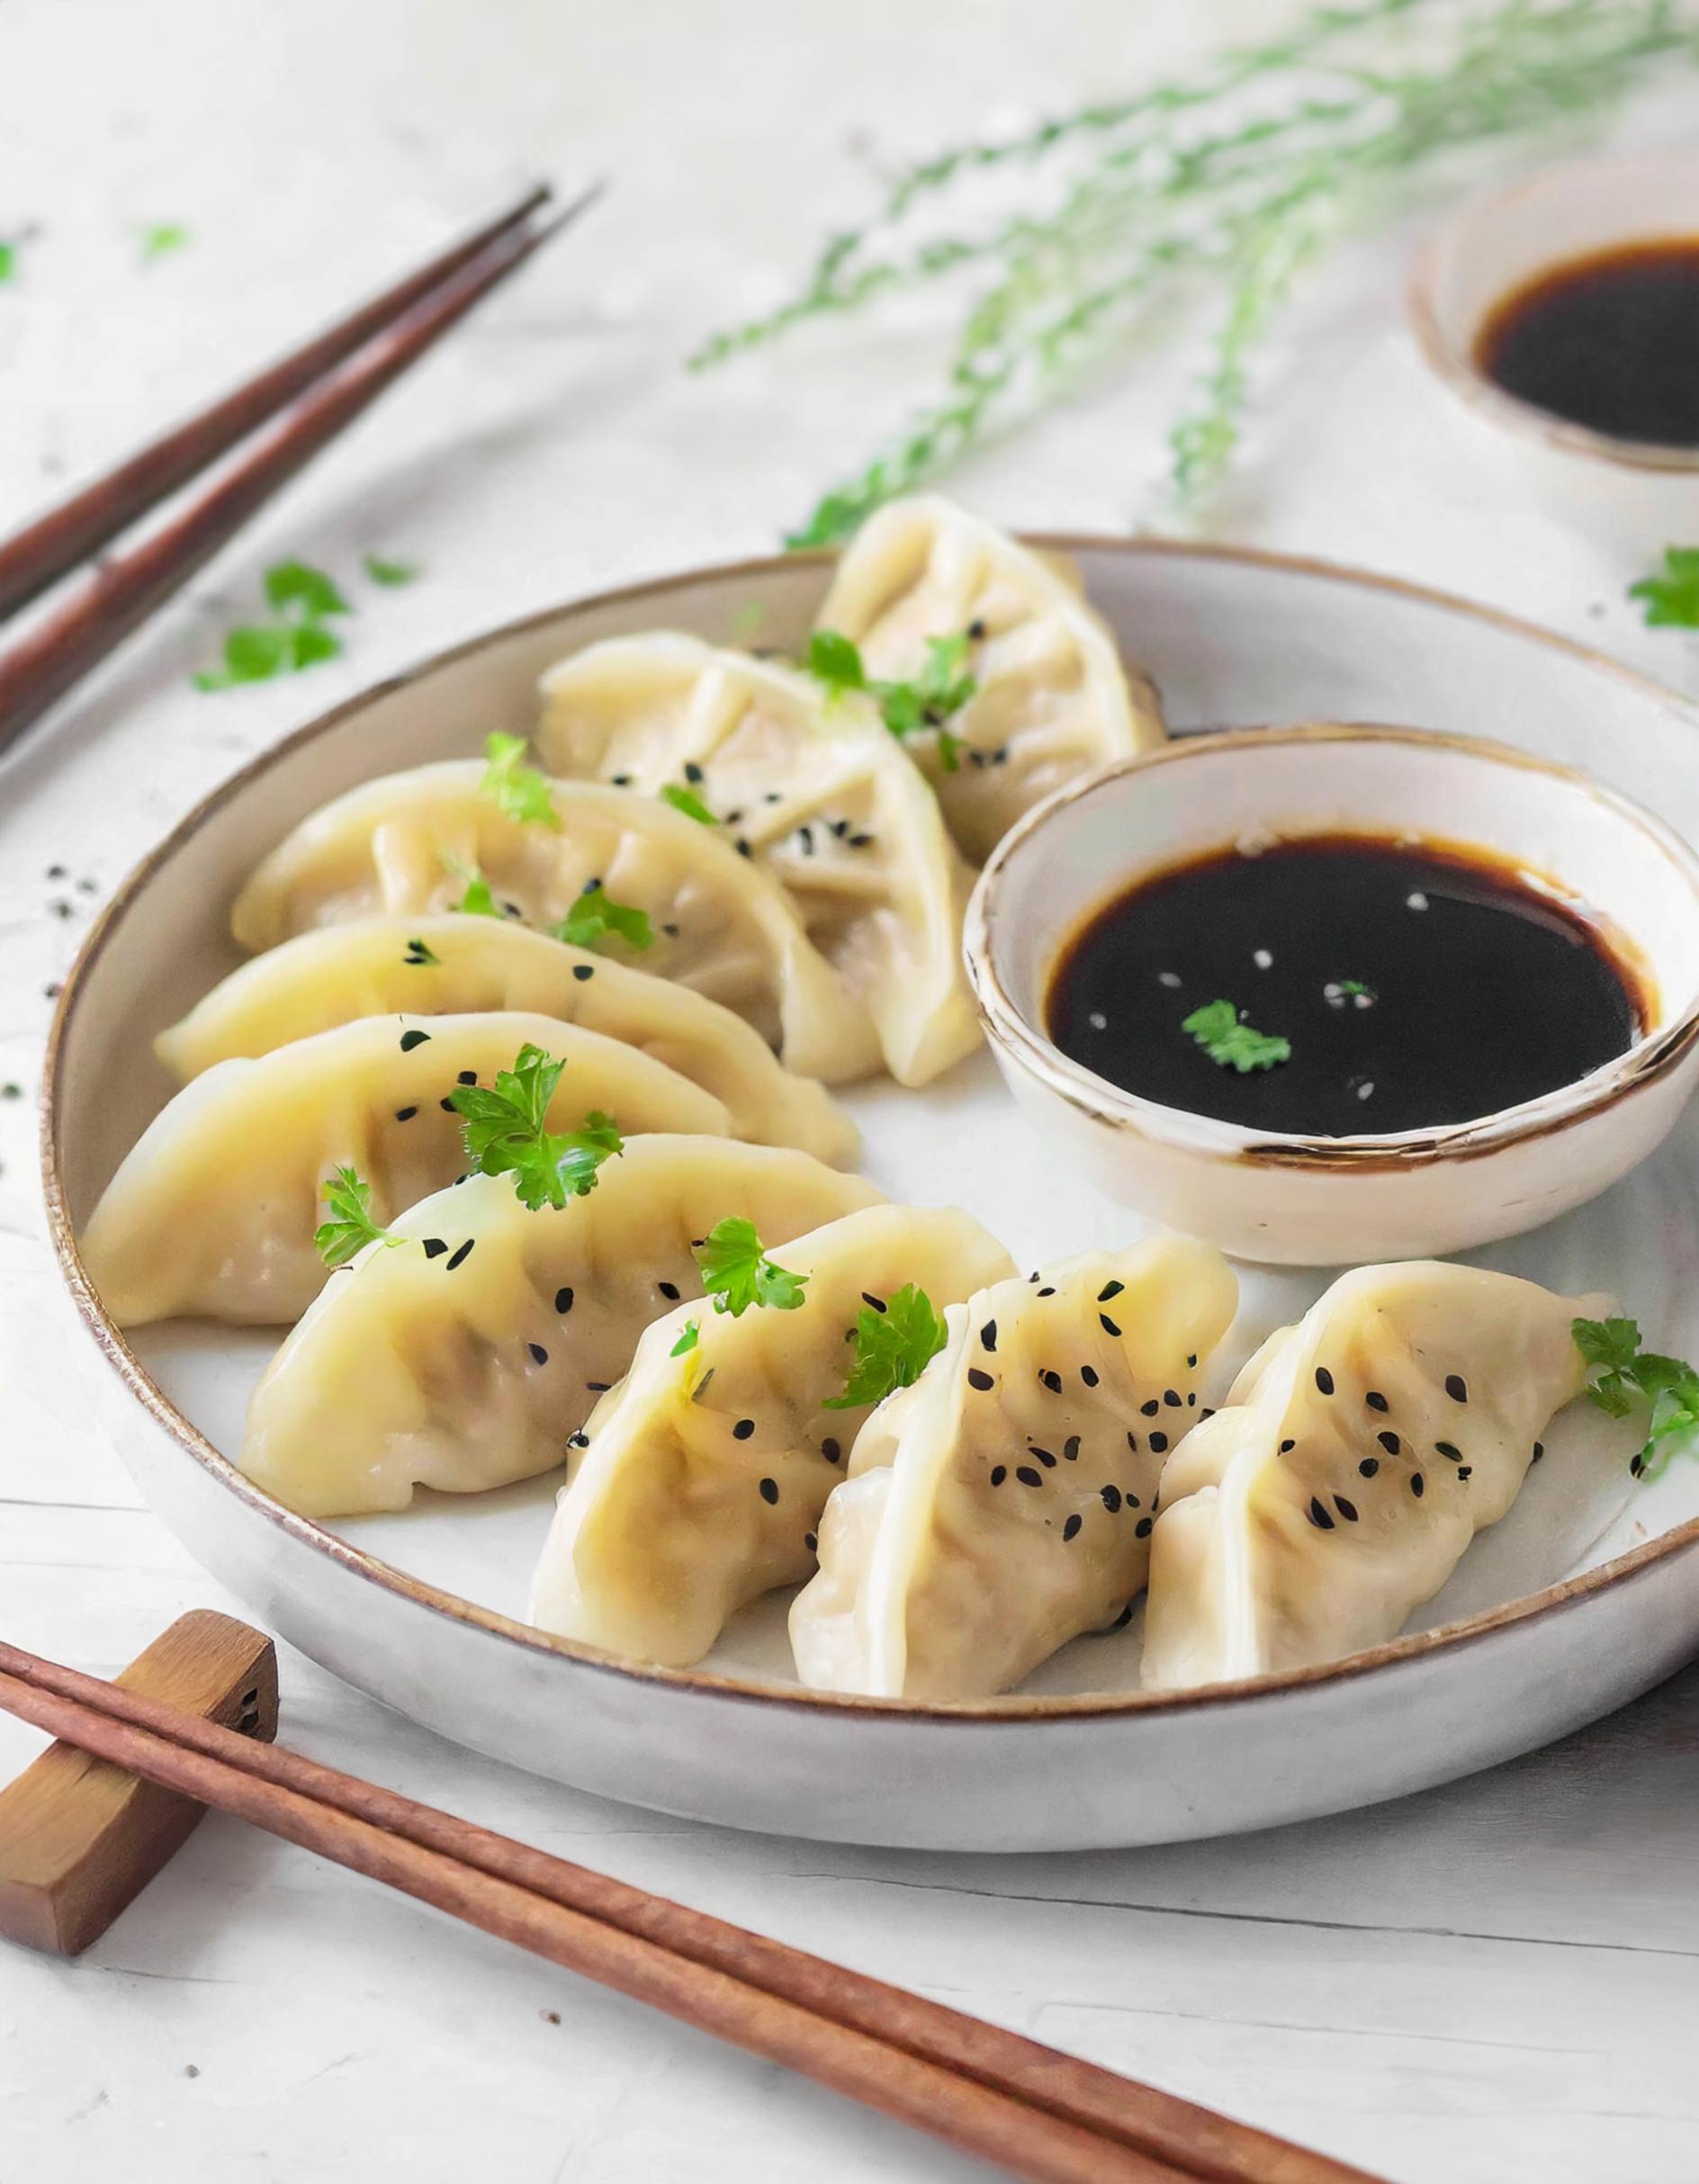 Capodanno cinese: scopri i piatti che ti porteranno fortuna quest’anno